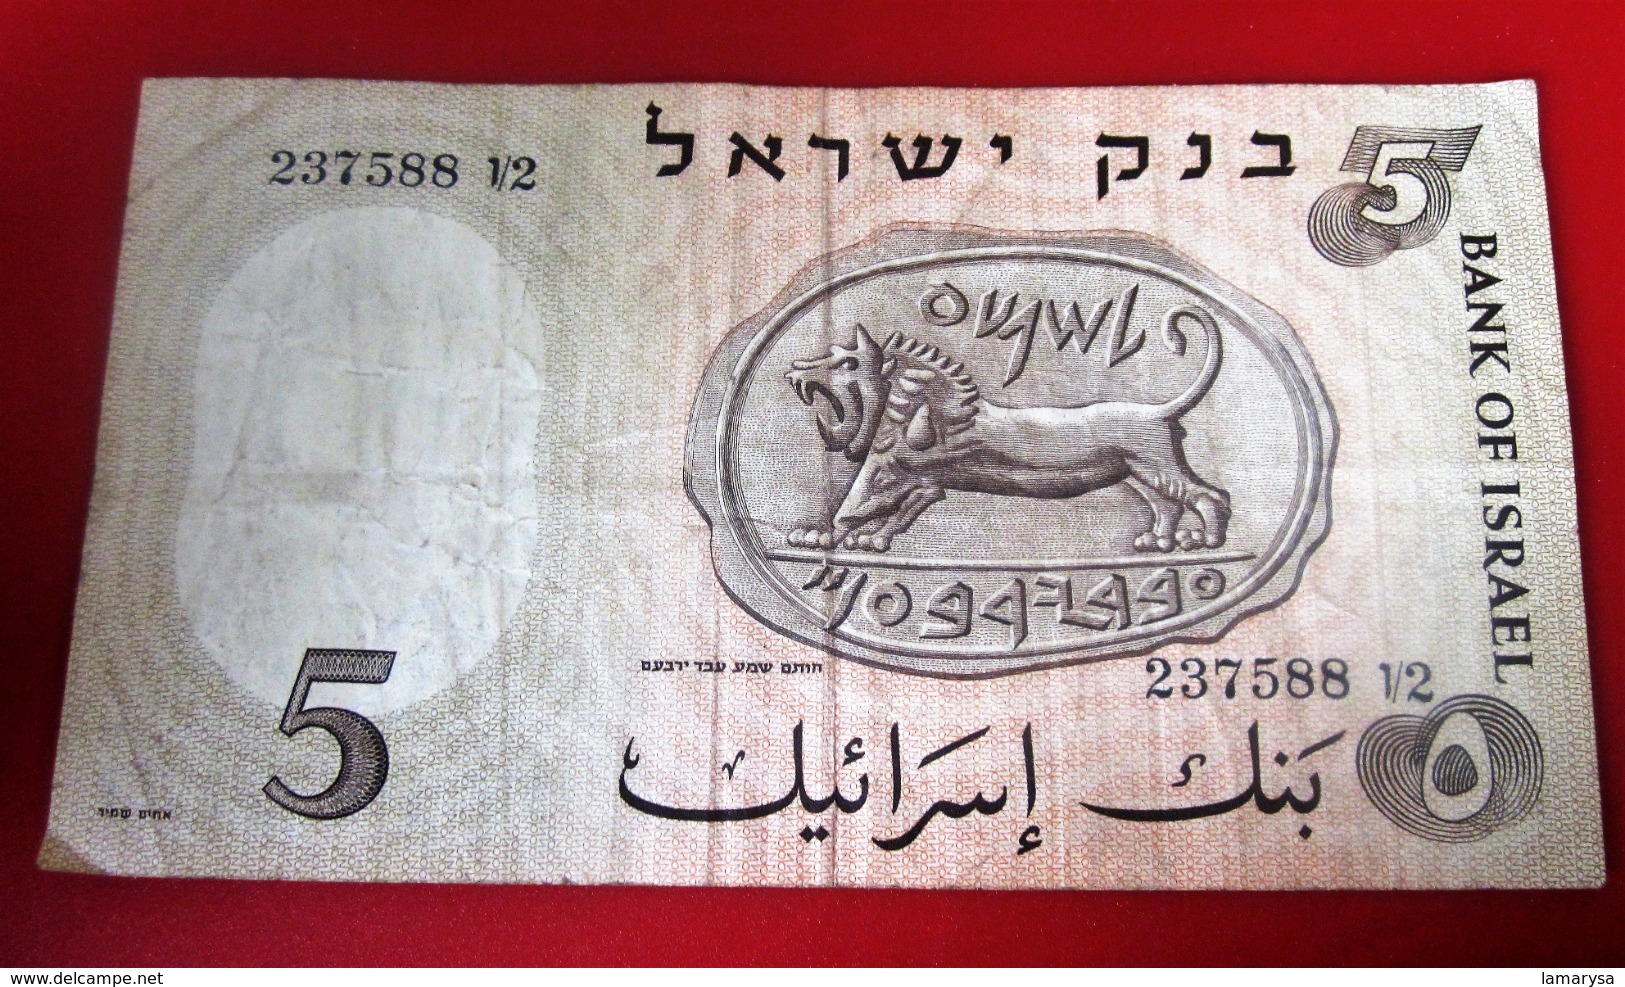 המץ ליוט ישראל  1958  BILLET DE BANQUE BANK OF ISRAËL 5  LIRES HAMECH LIROT ISRAELI  כרטיס בנק   BANK TICKET - Israel